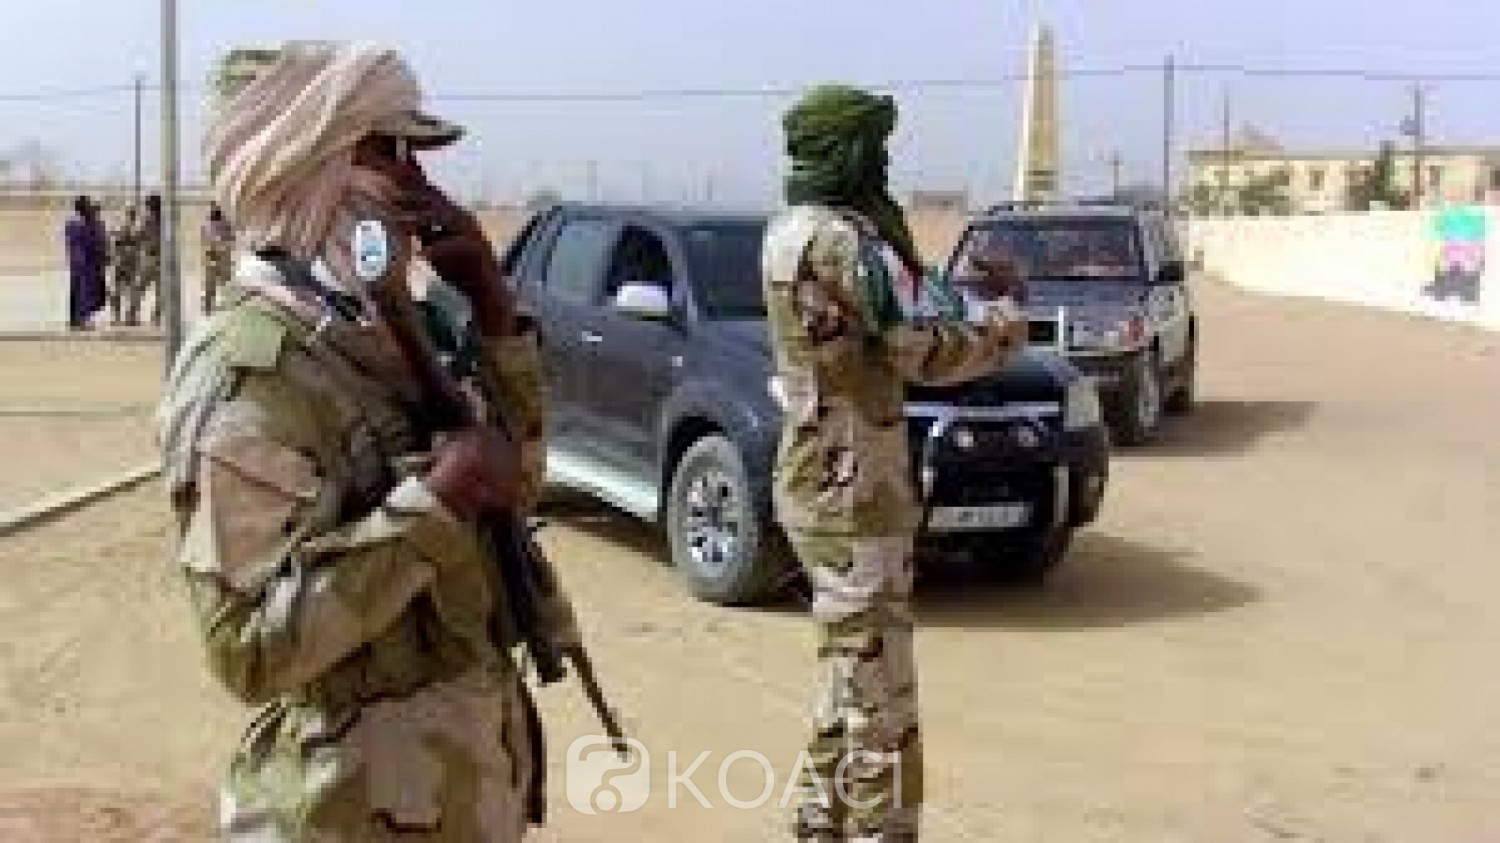 Mali: La CMA suspend sa participation à la réunion de suivi de l'accord d'Alger